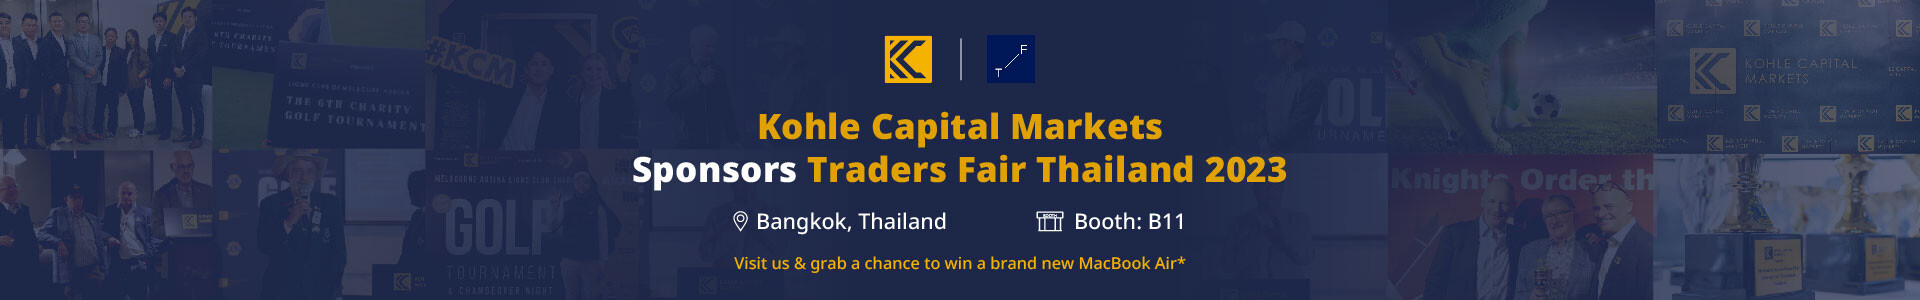 Kohle Capital Markets (KCM) ได้เข้าร่วมสนับสนุนเทรดเดอร์ แฟร์ ไทยแลนด์ 2023